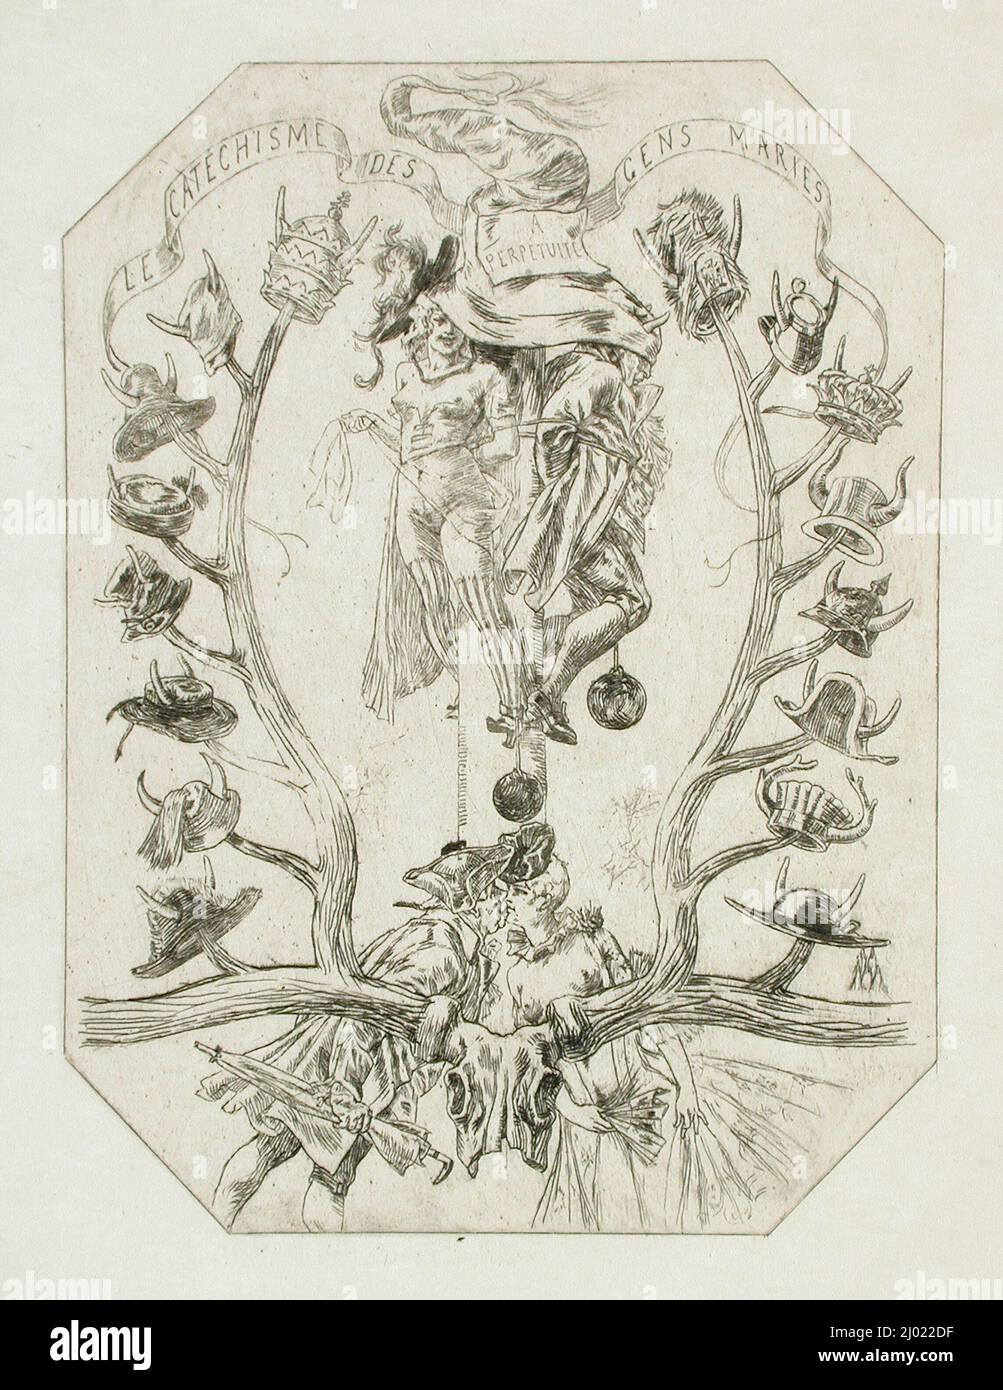 Catéchisme des gens mariés. Félicien Victor Joseph Rops (Belgium, Namur, 1833-1898). Belgium, no date. Prints; etchings. Etching Stock Photo